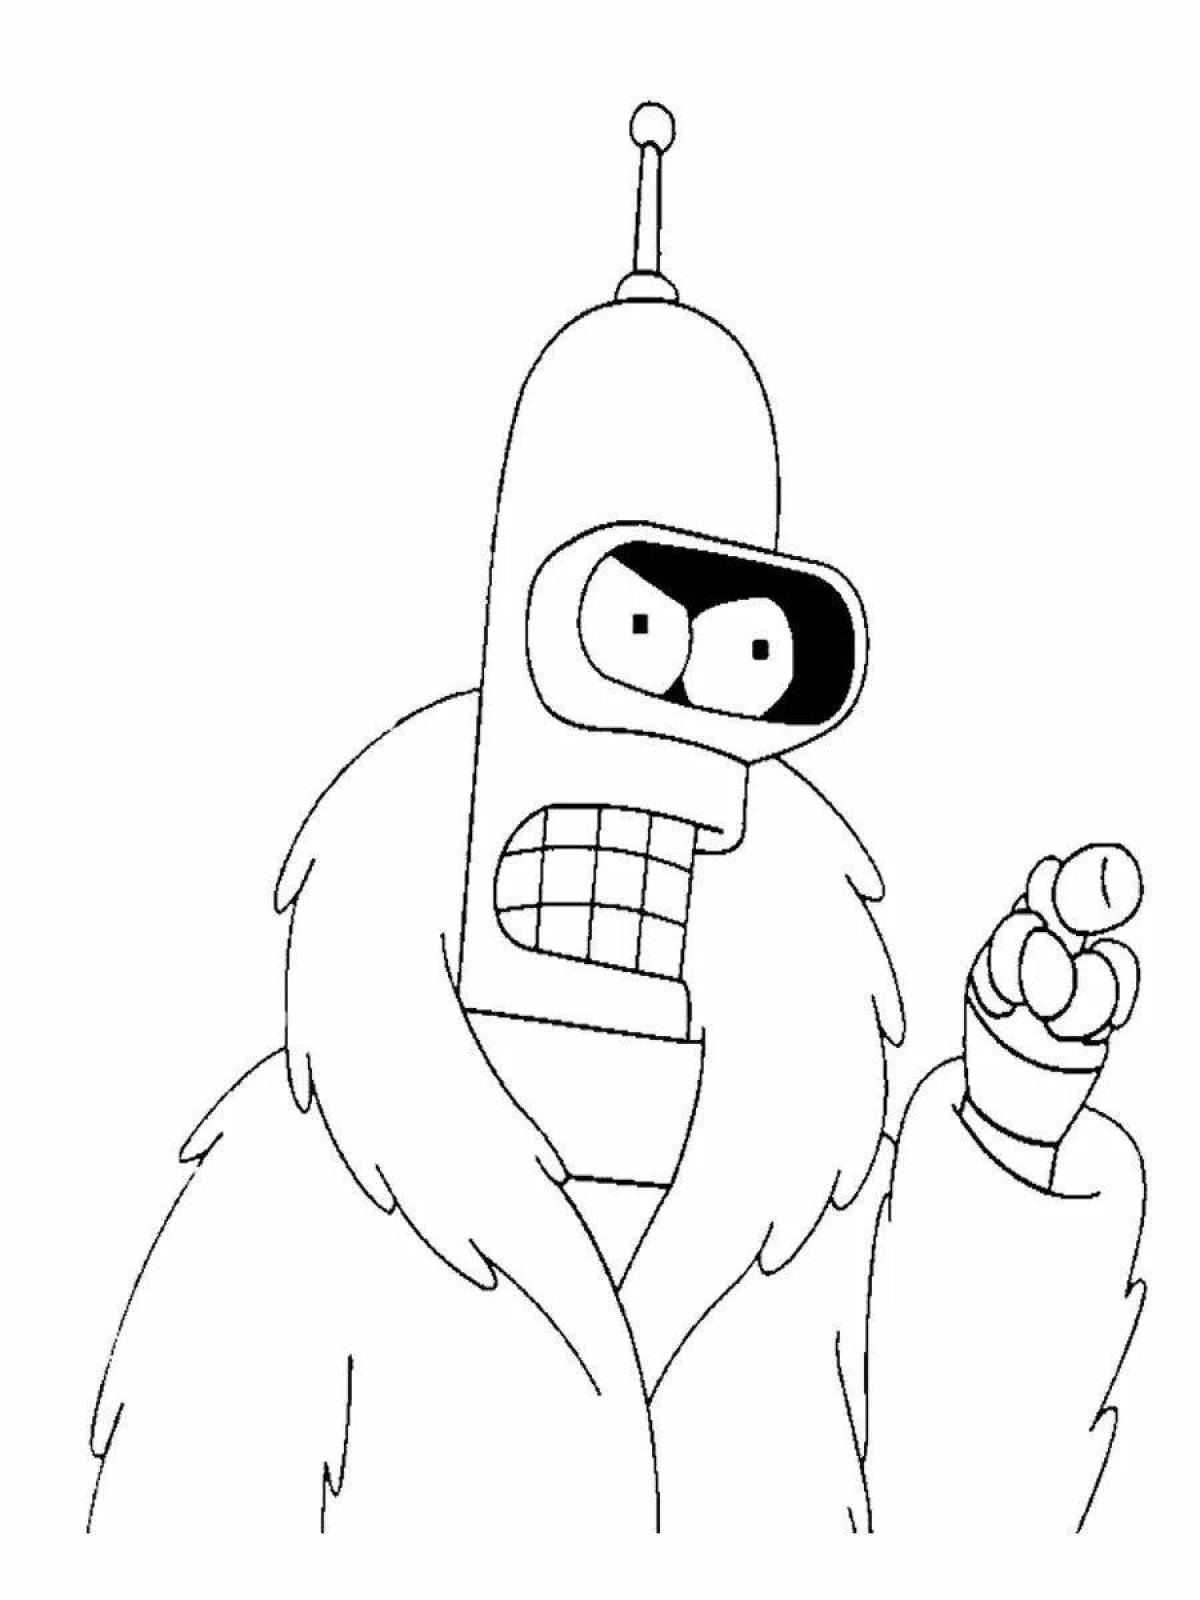 Bender #2